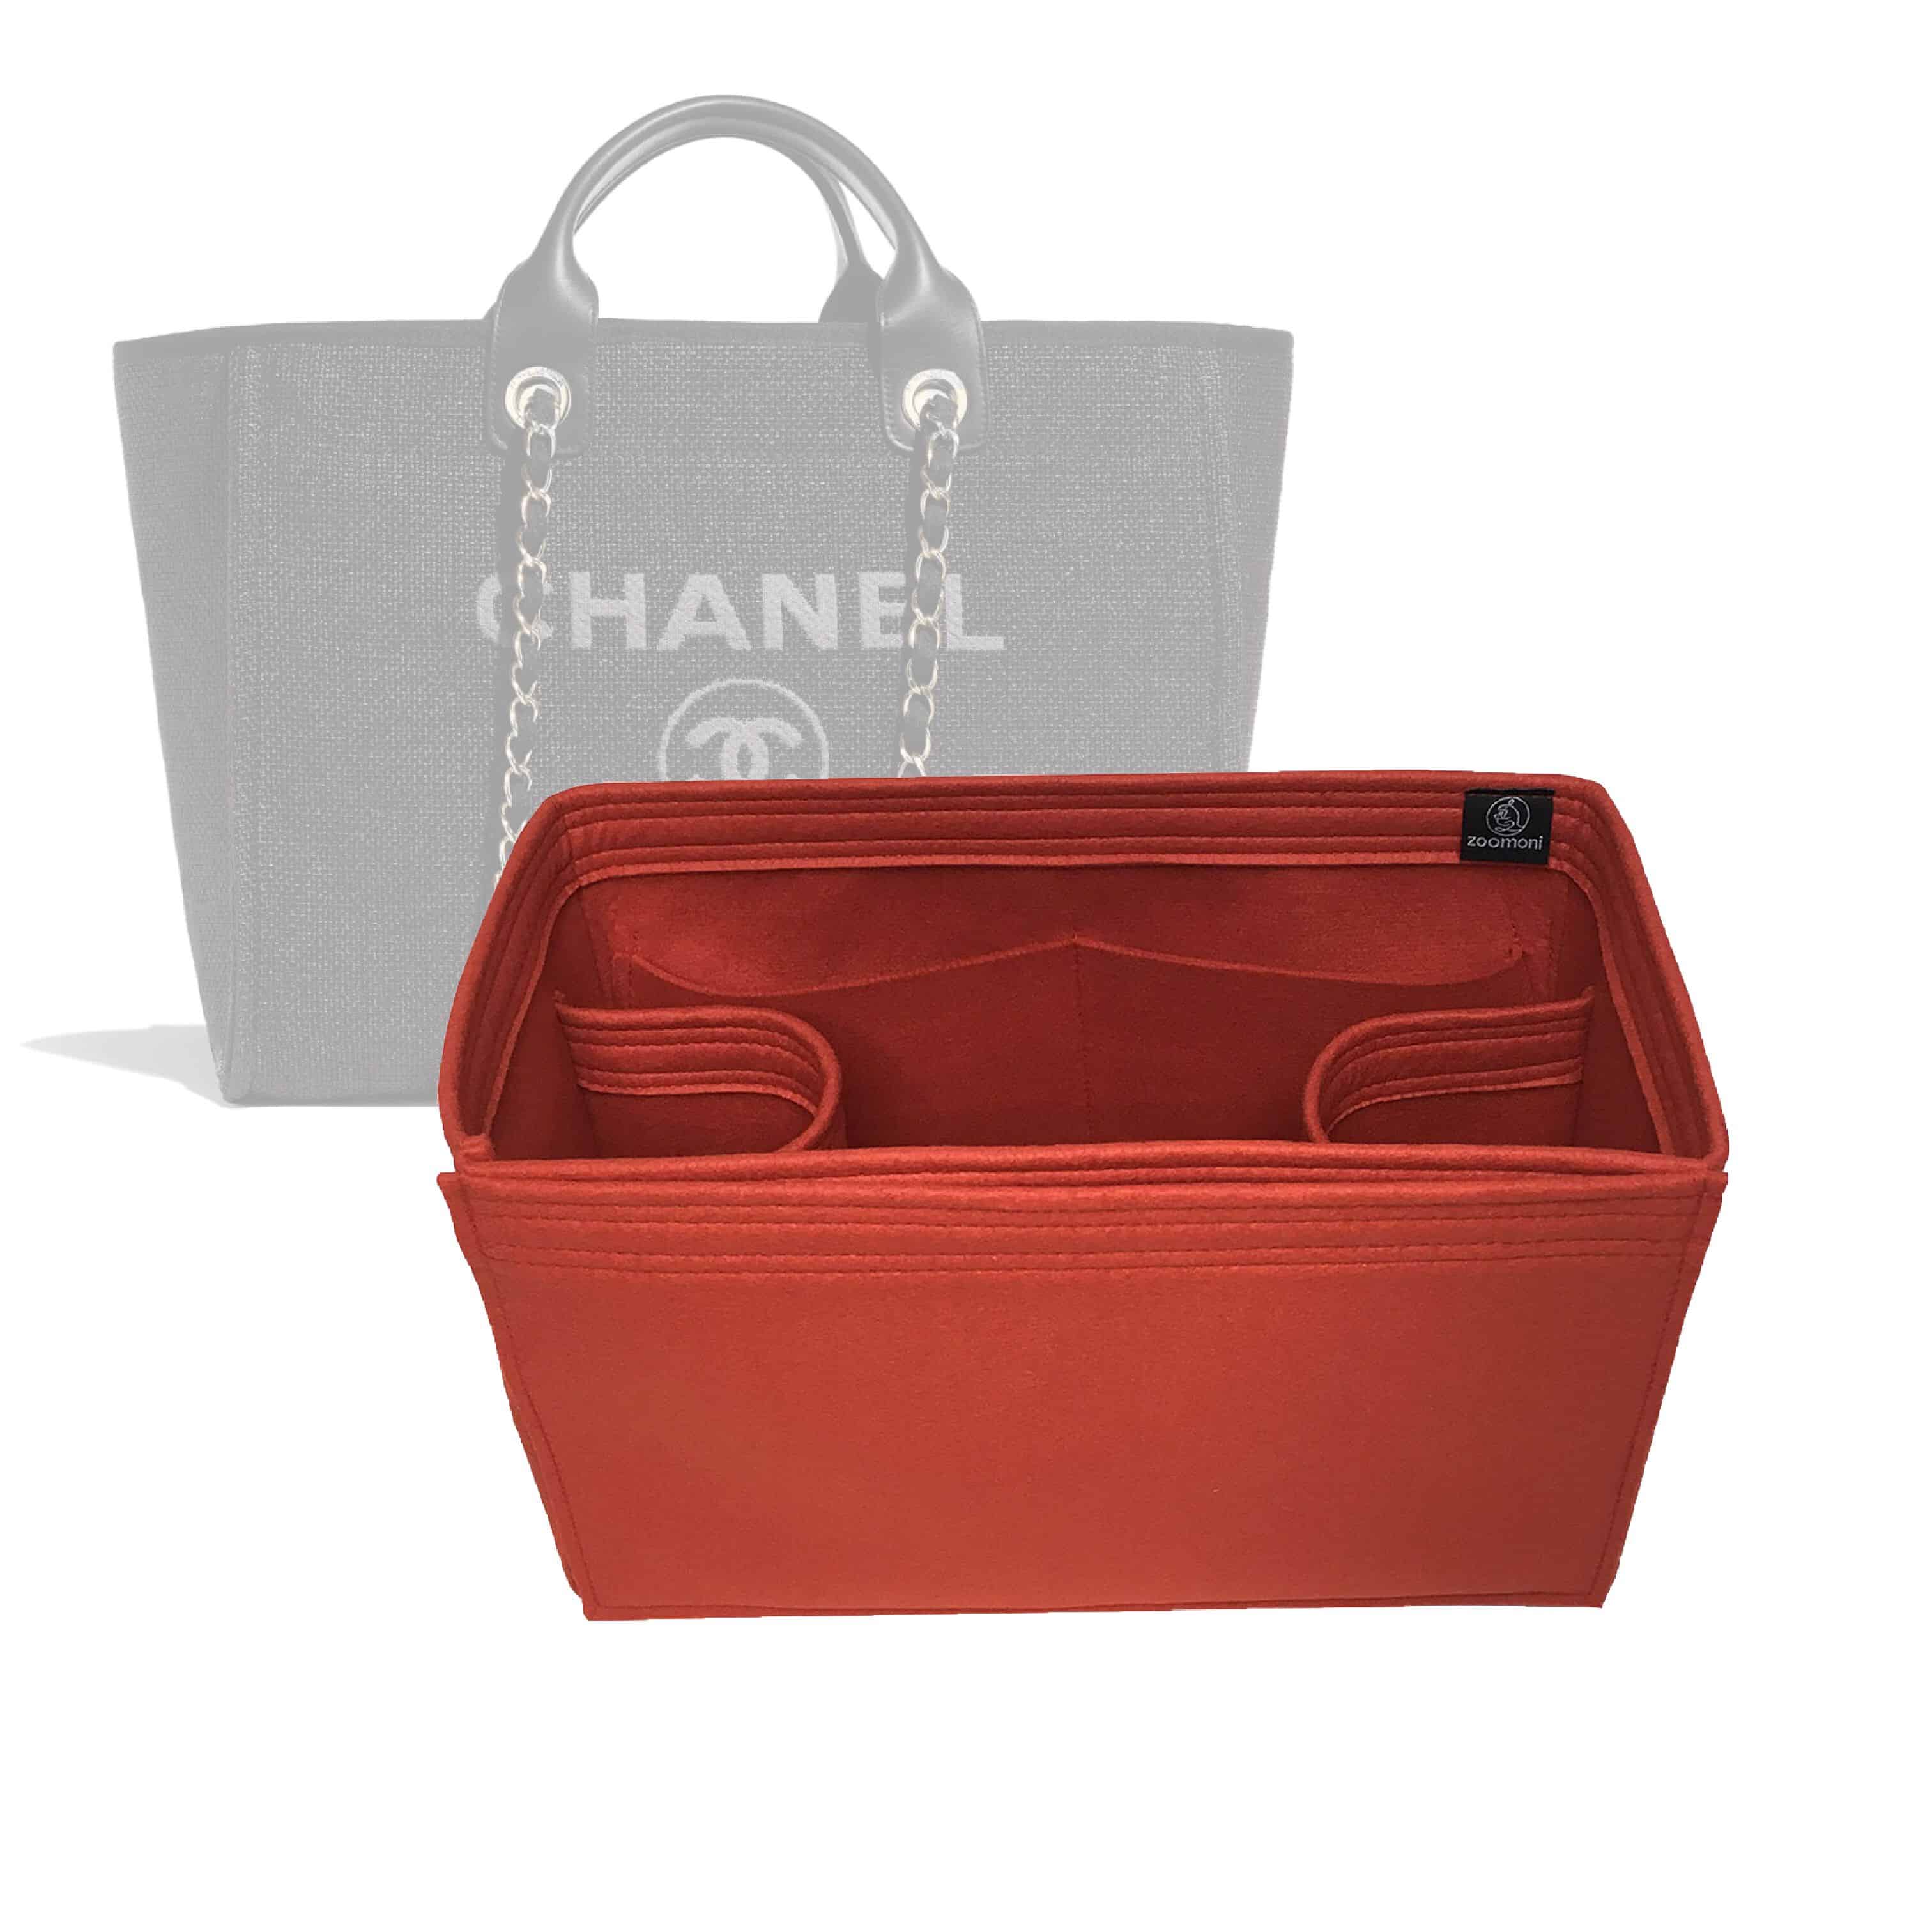 Chanel Deauville Tote Bag Organizer